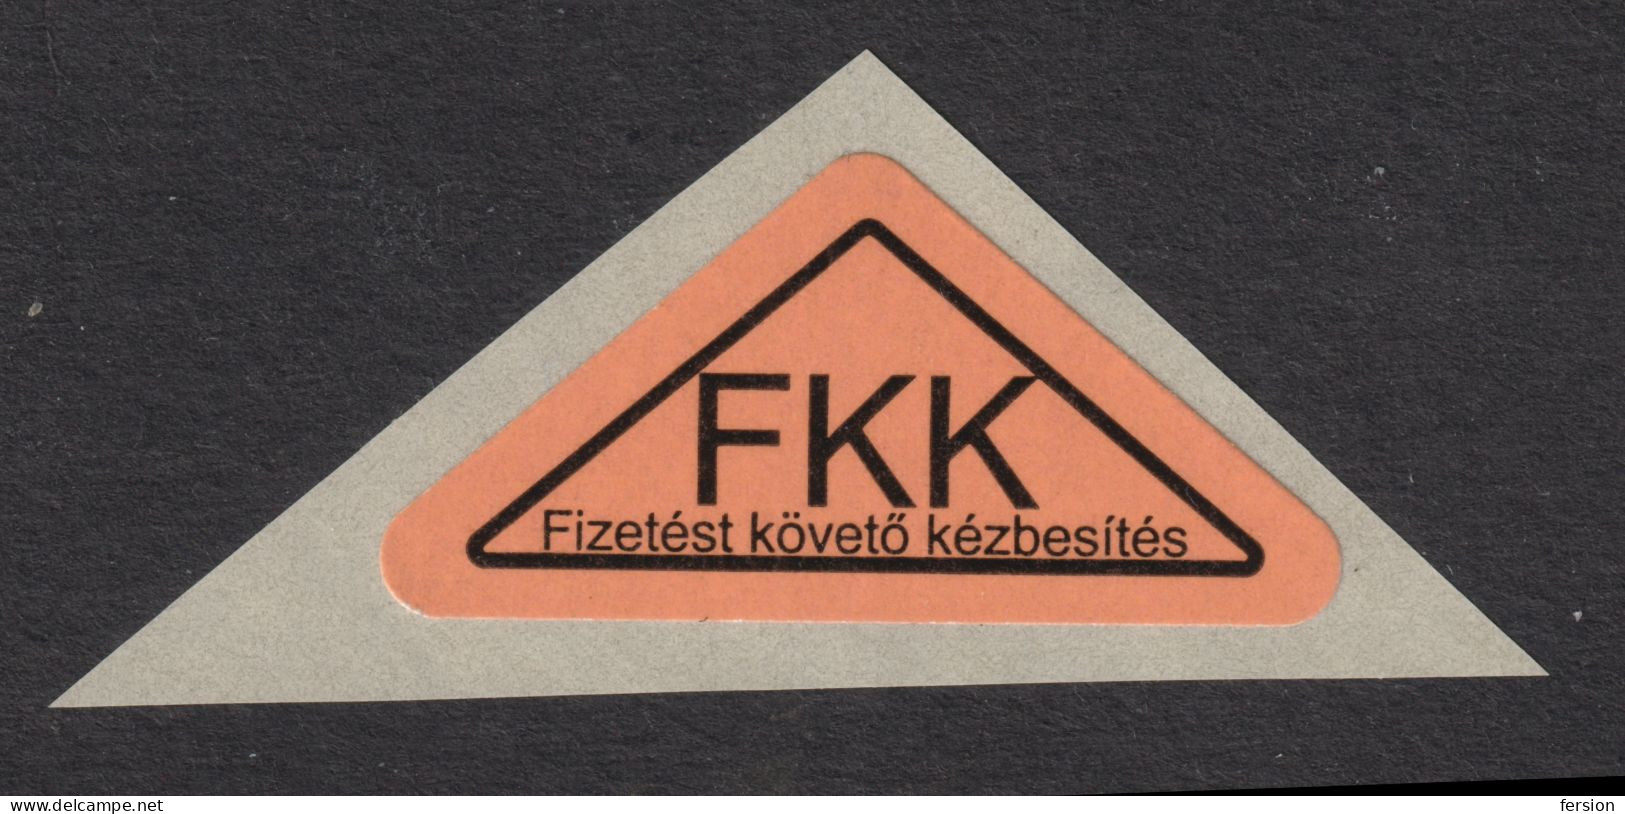 Postal LABEL - Delivery After Payment " Remboursement " FKK - Self Adhesive Vignette Label - 2020 Hungary - MNH - Viñetas De Franqueo [ATM]